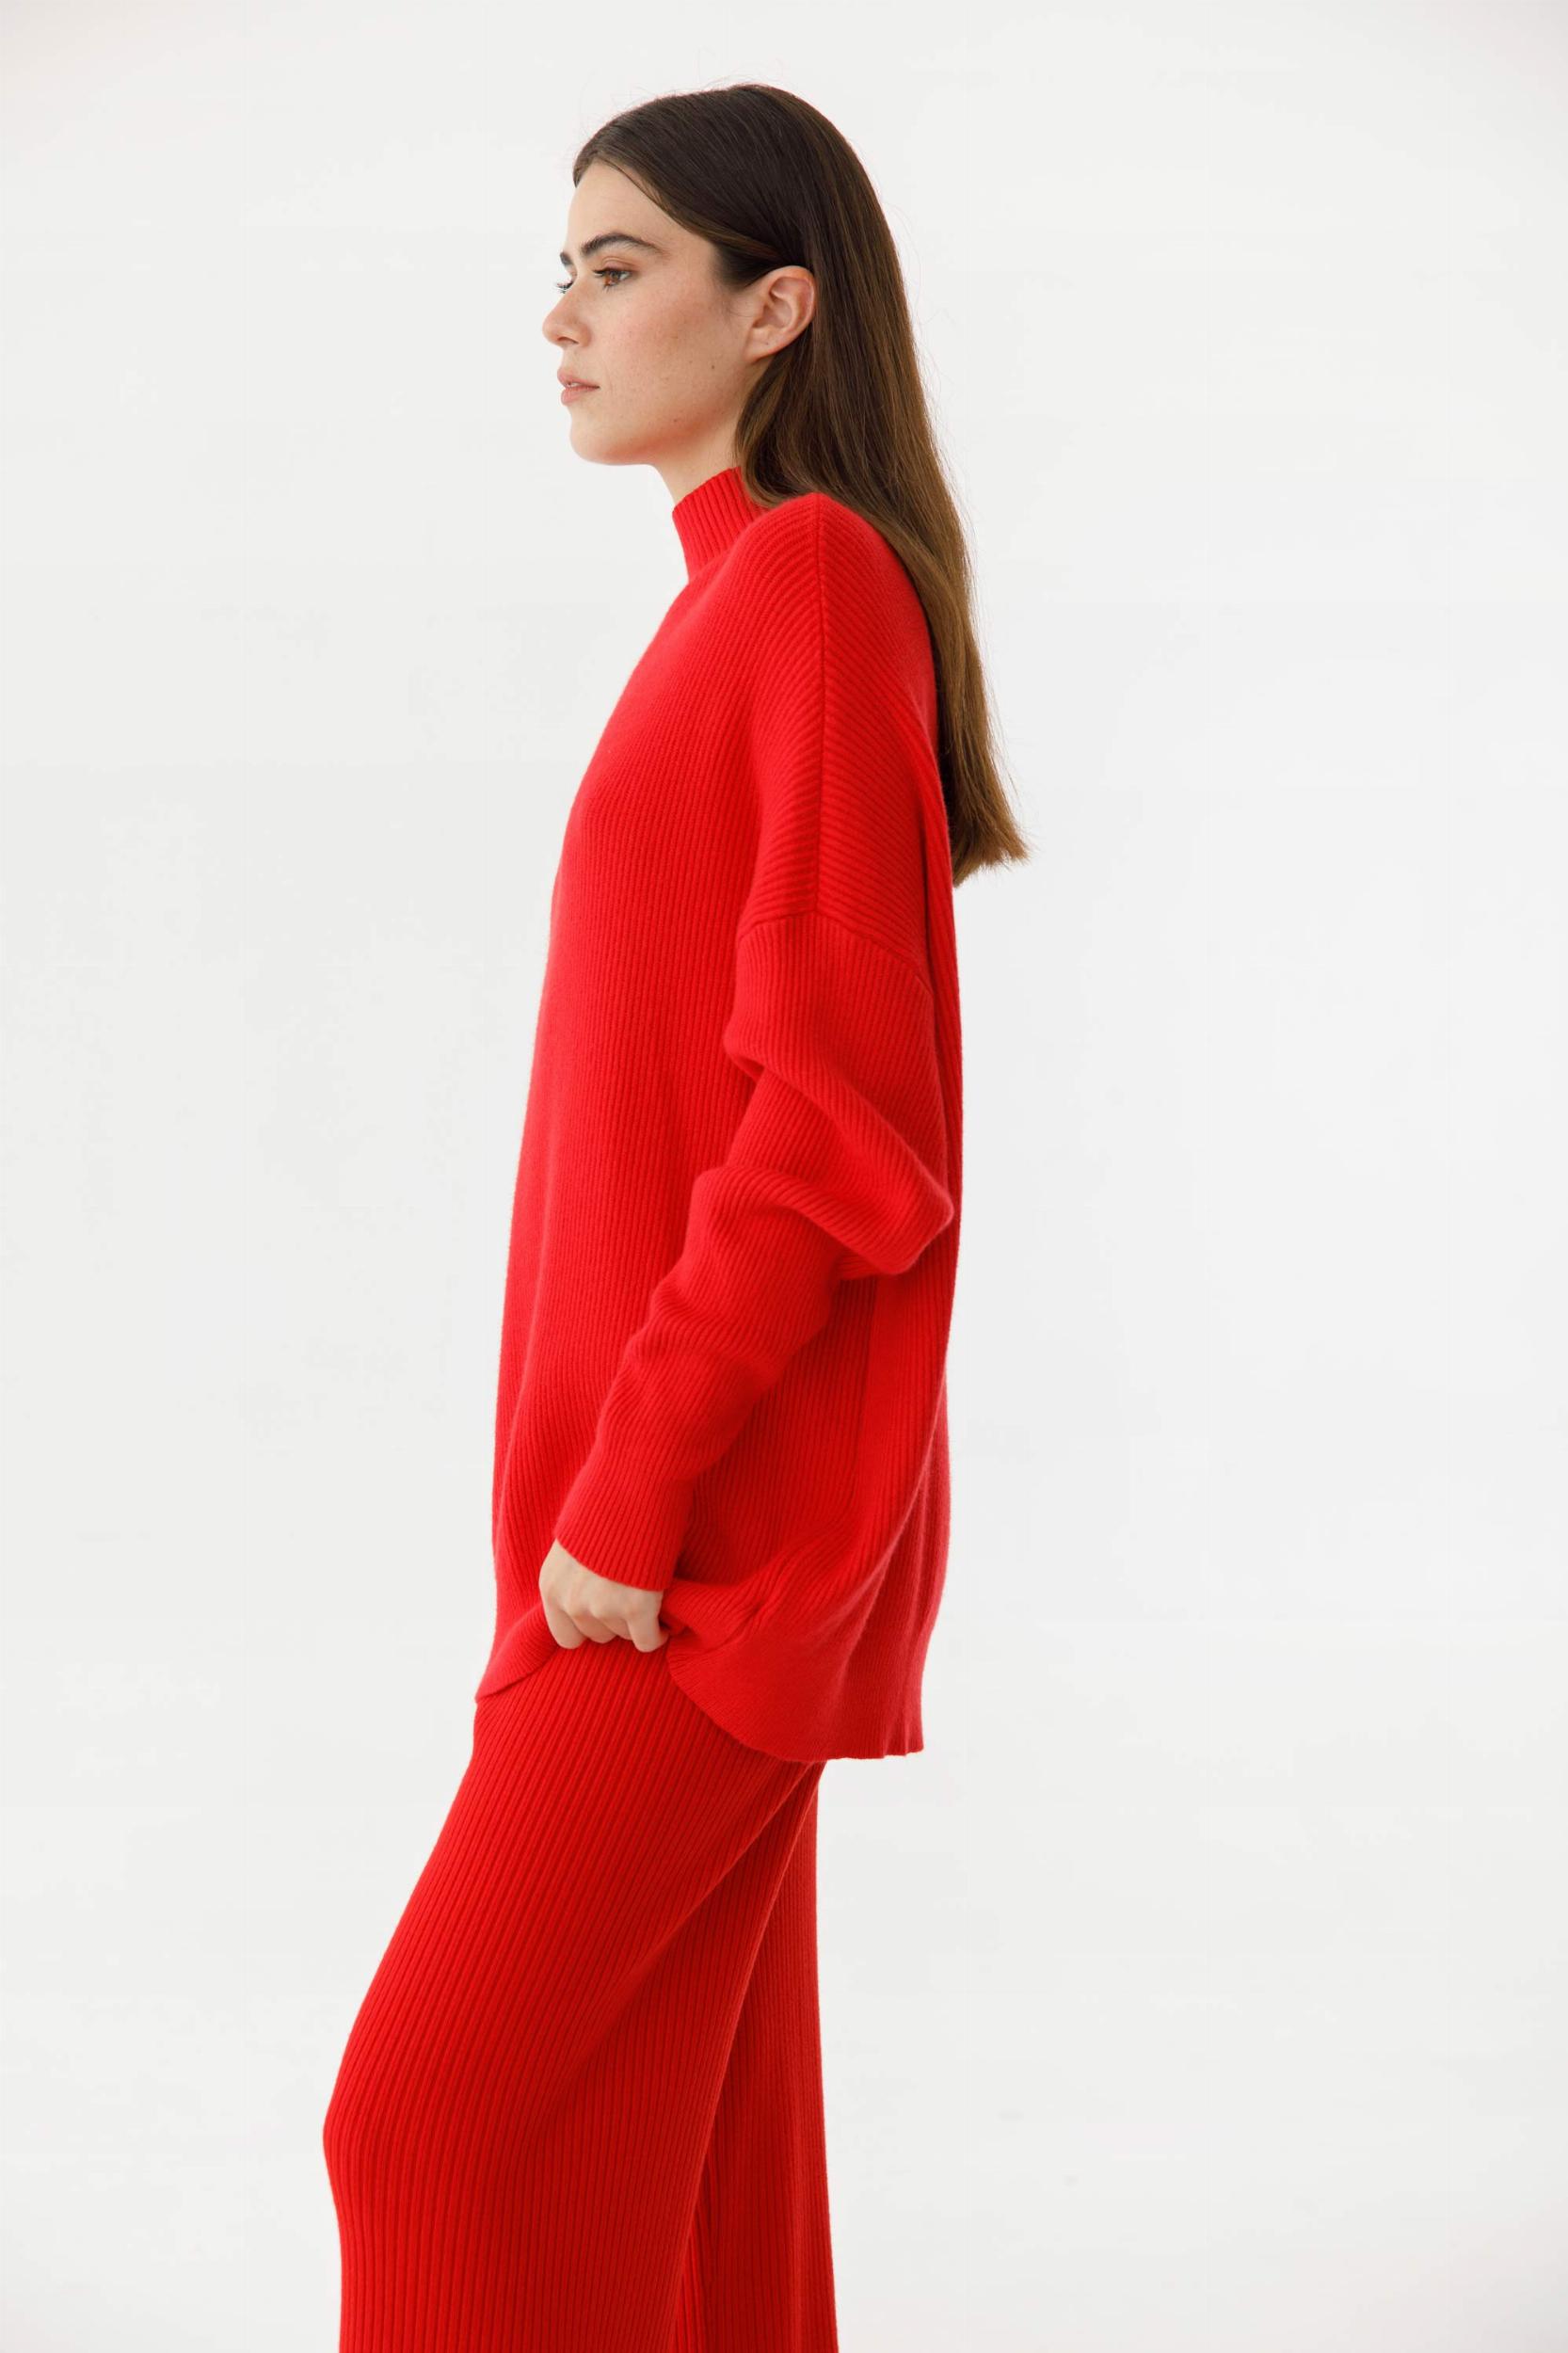 Sweater Marlene rojo talle unico